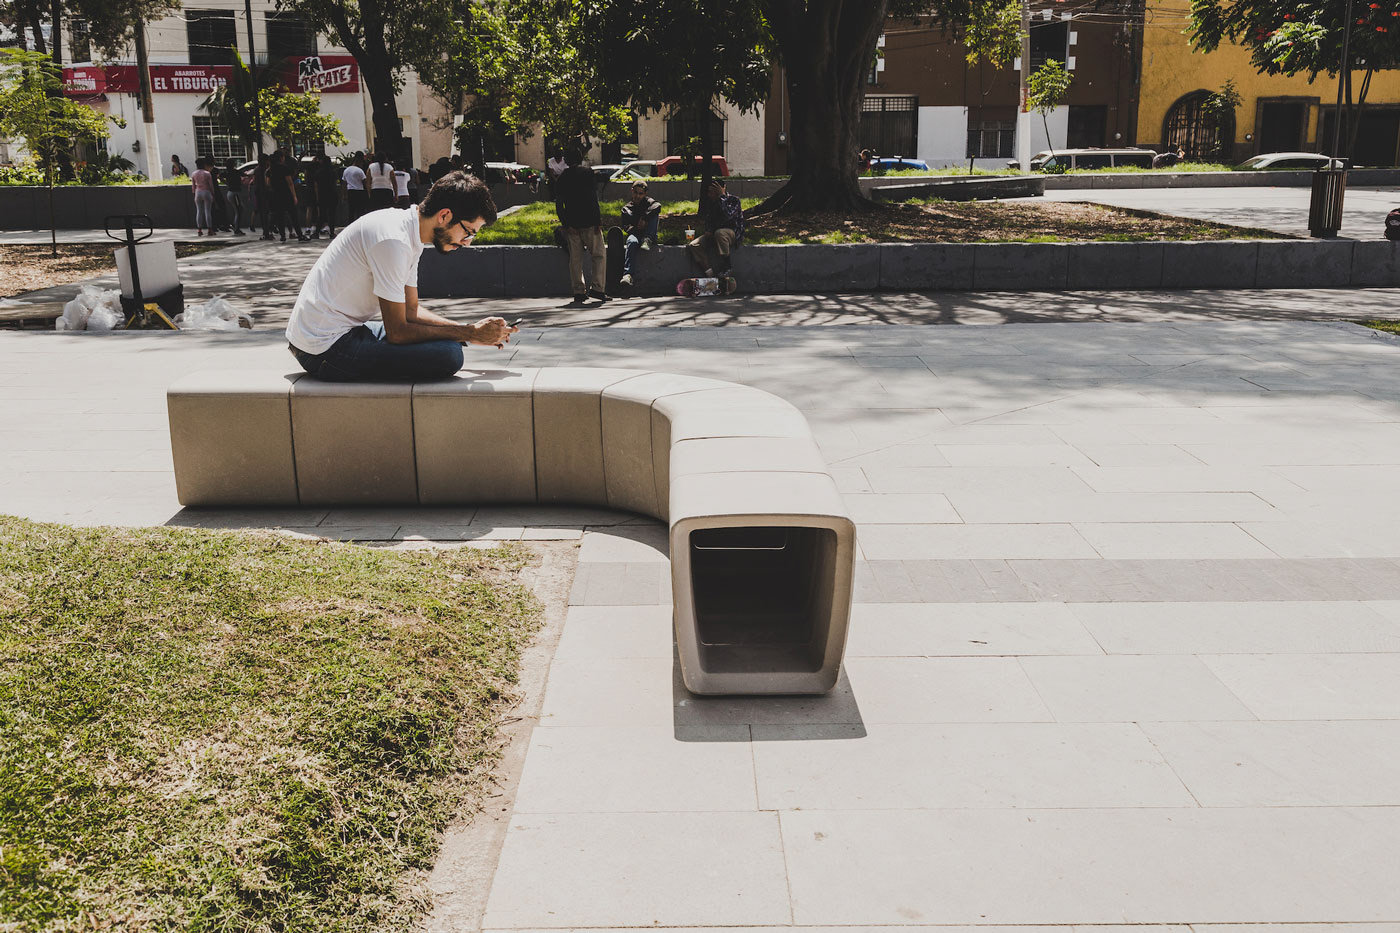 bench concrete street furniture urban furniture diseño design process CONCRETO mobiliario urbano